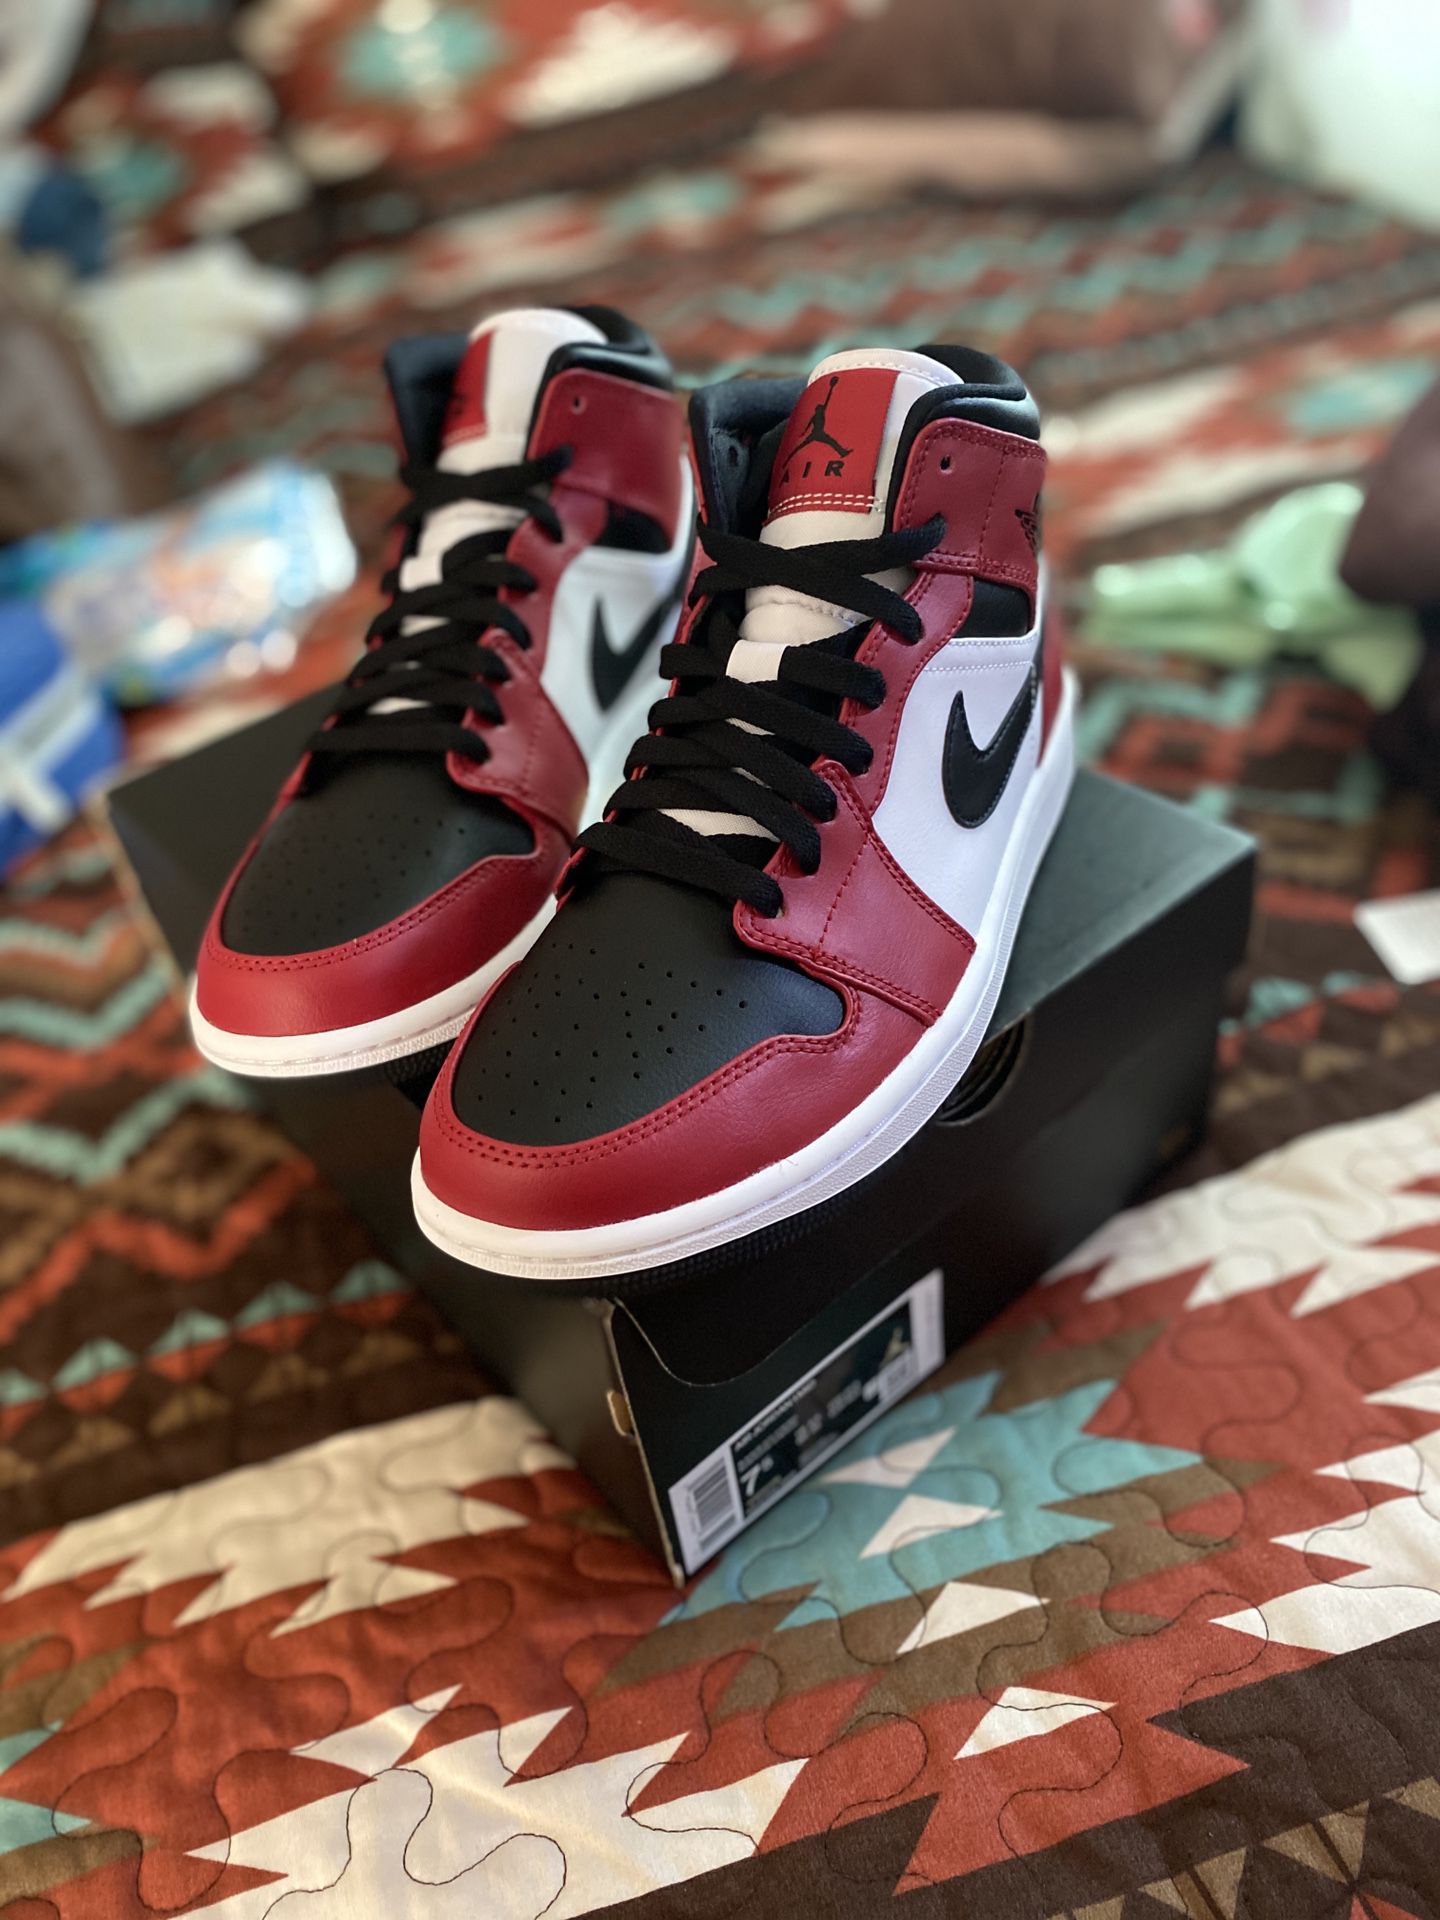 Jordan 1 Chicago Black toe size 7.5 men’s New